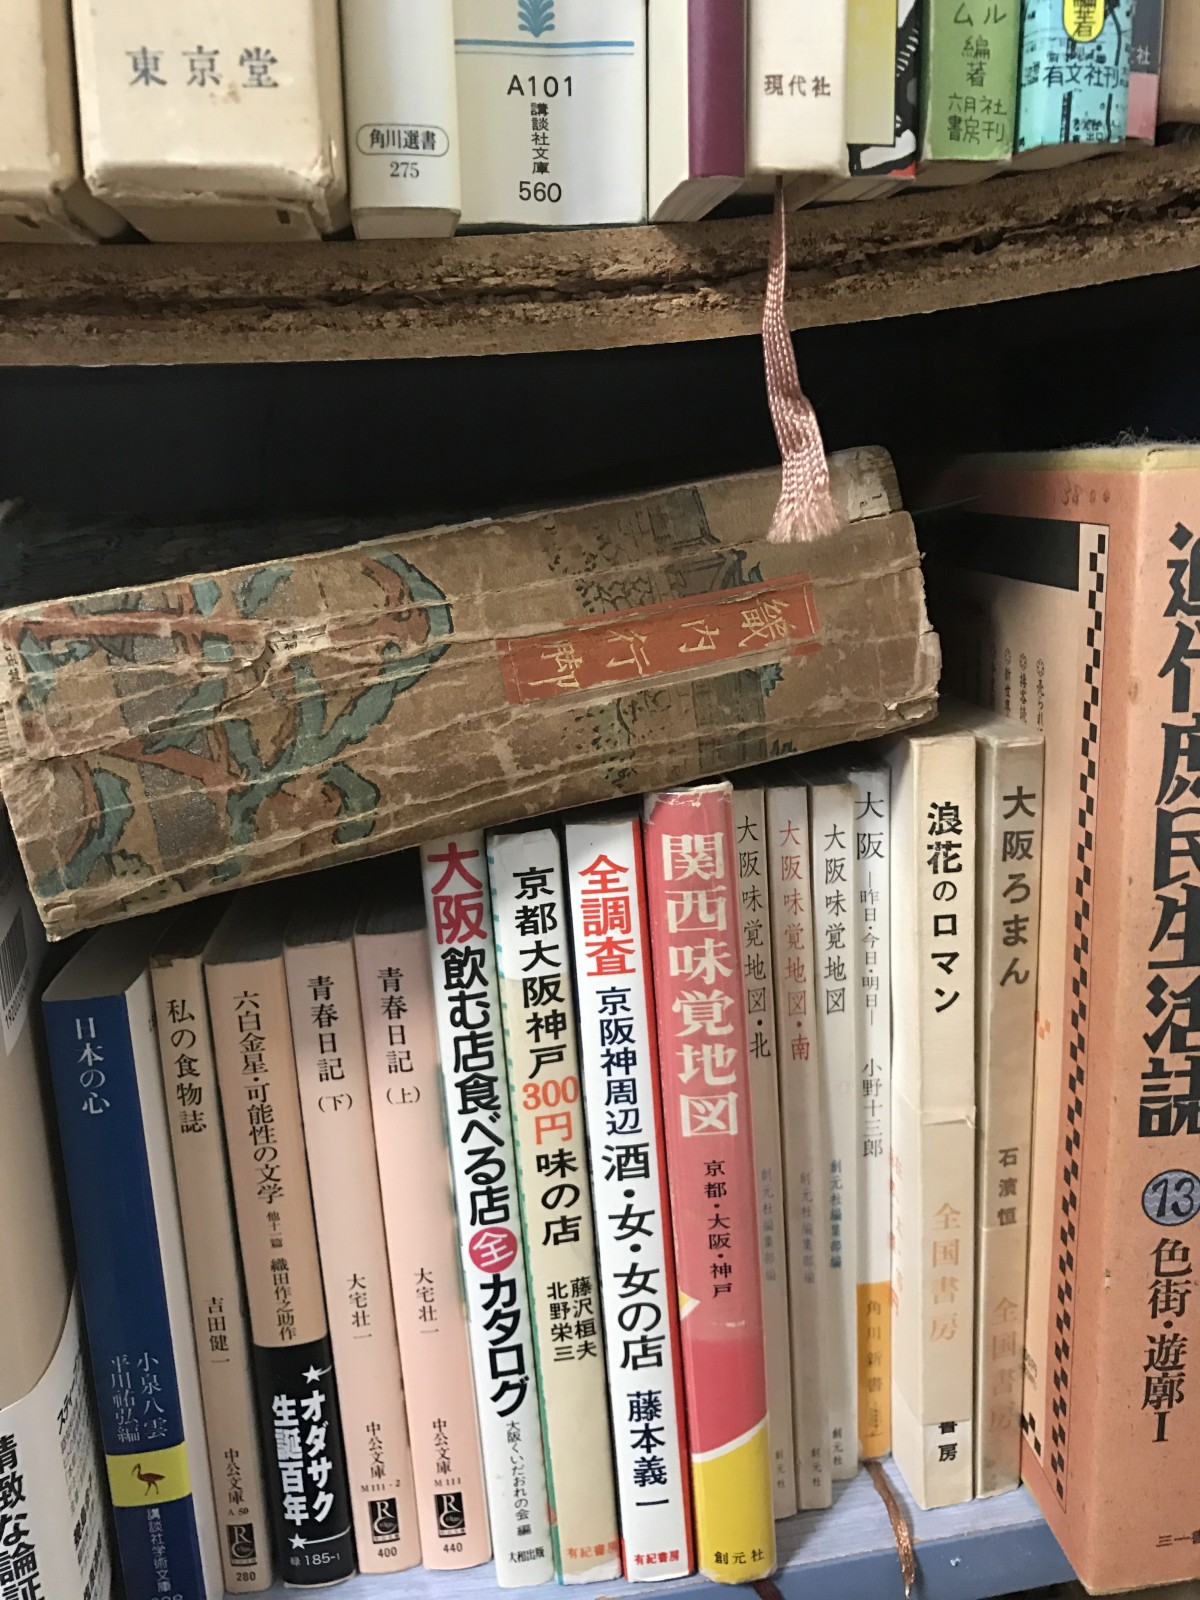 大阪の本が多いです。